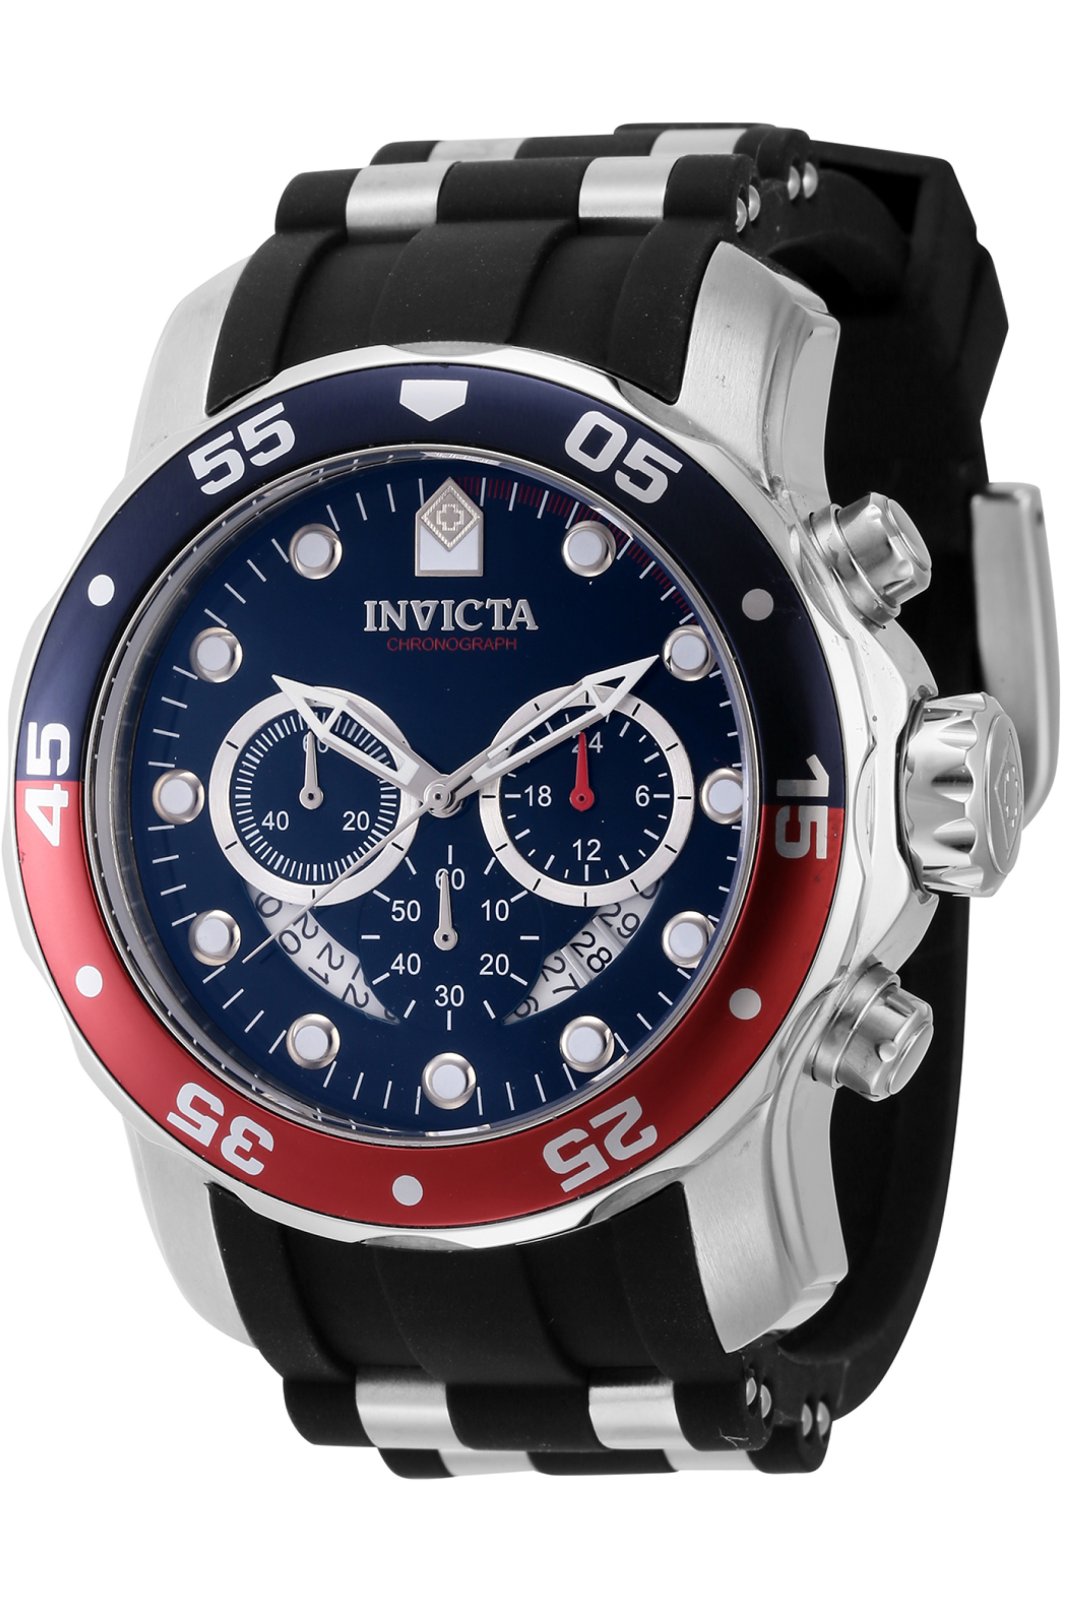 Invicta Pro Diver 44521 Men's Quartz Watch - 48mm